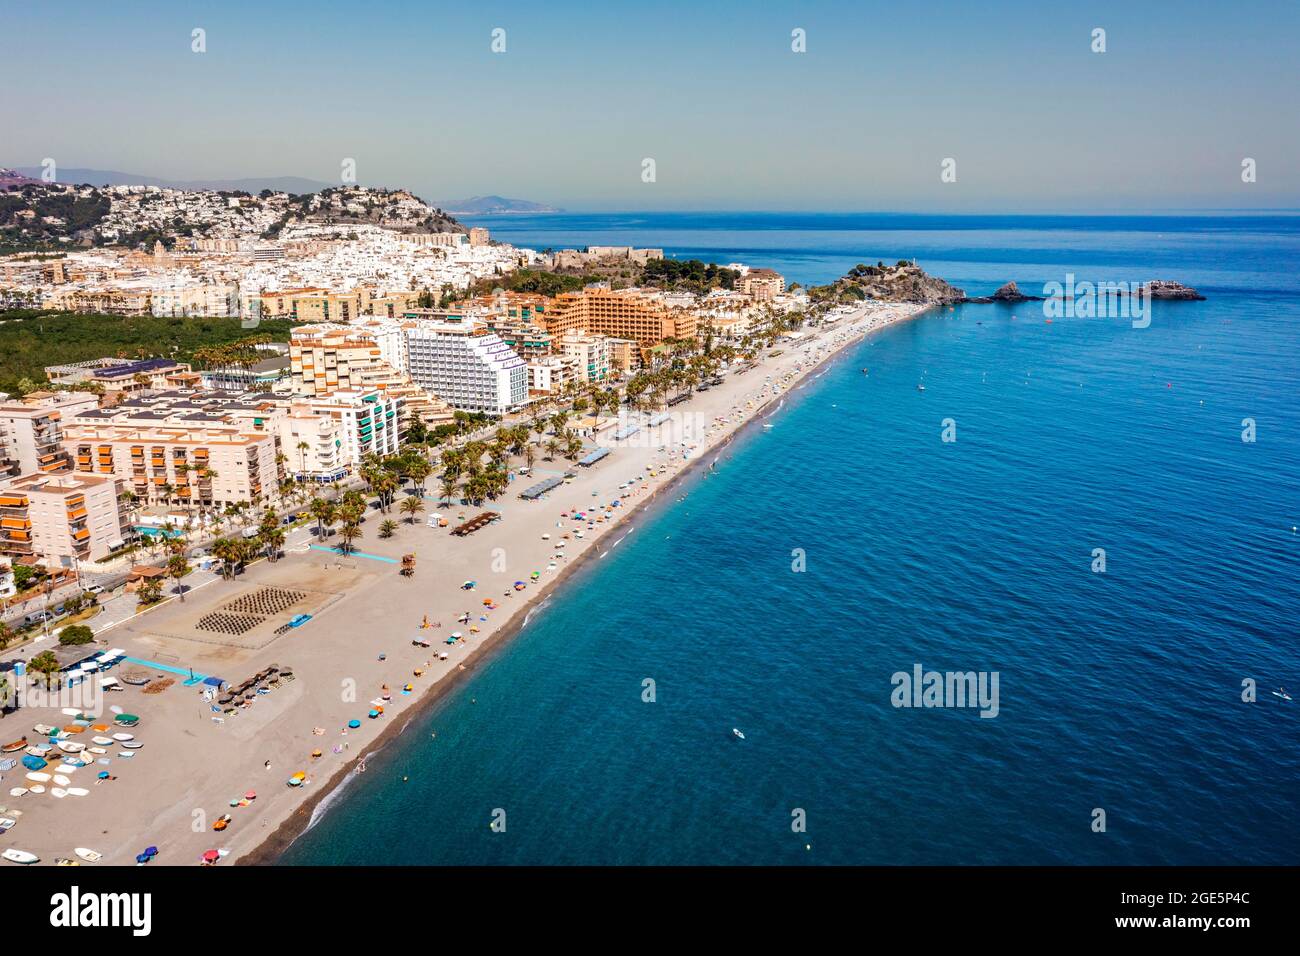 Vista aérea de la costa turística de Almunecar por el Mar Mediterráneo, Andalucía, España Foto de stock